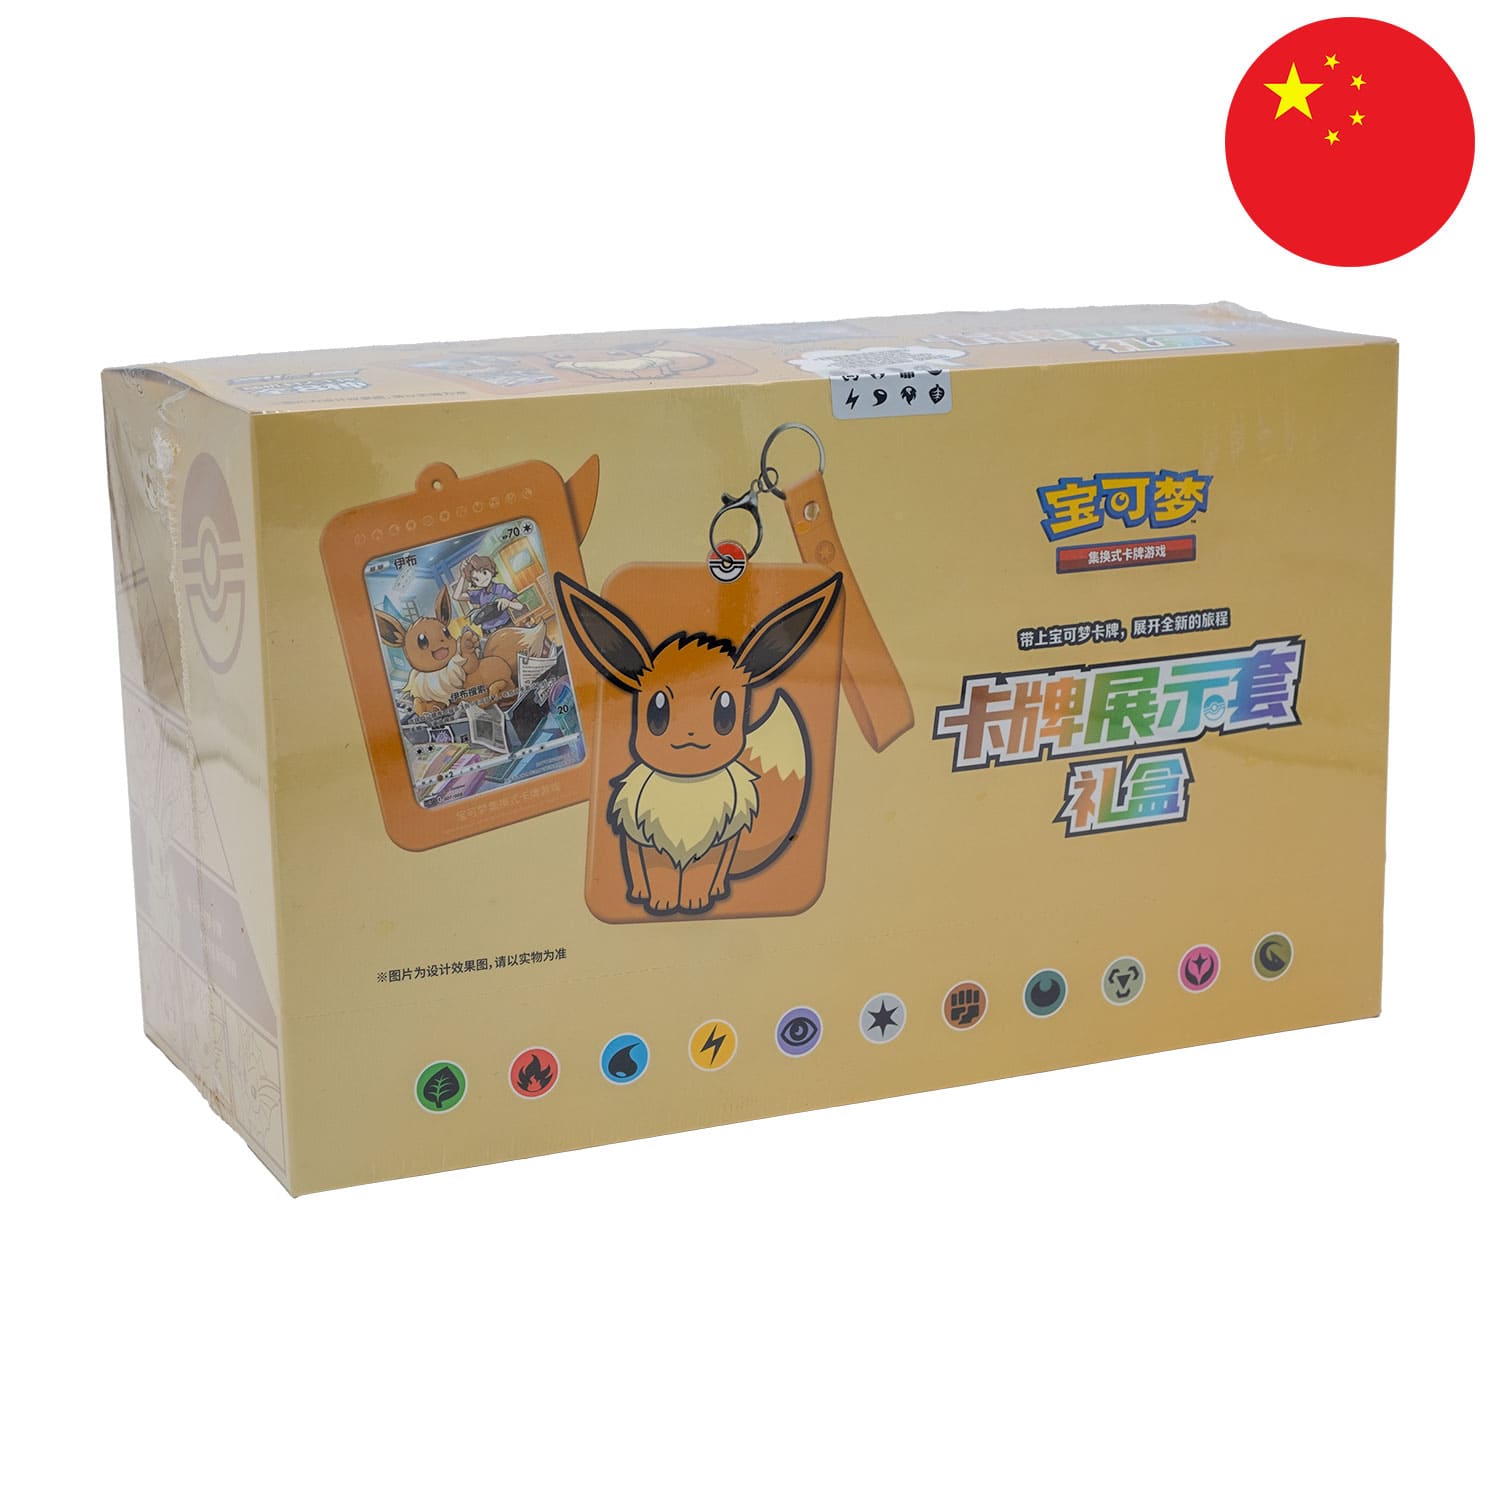 Das Display zu den Evoli Kartenhaltern mit Pokemon Karten, frontal&schräg als Hauptbild, mit der Flagge Chinas in der Ecke.